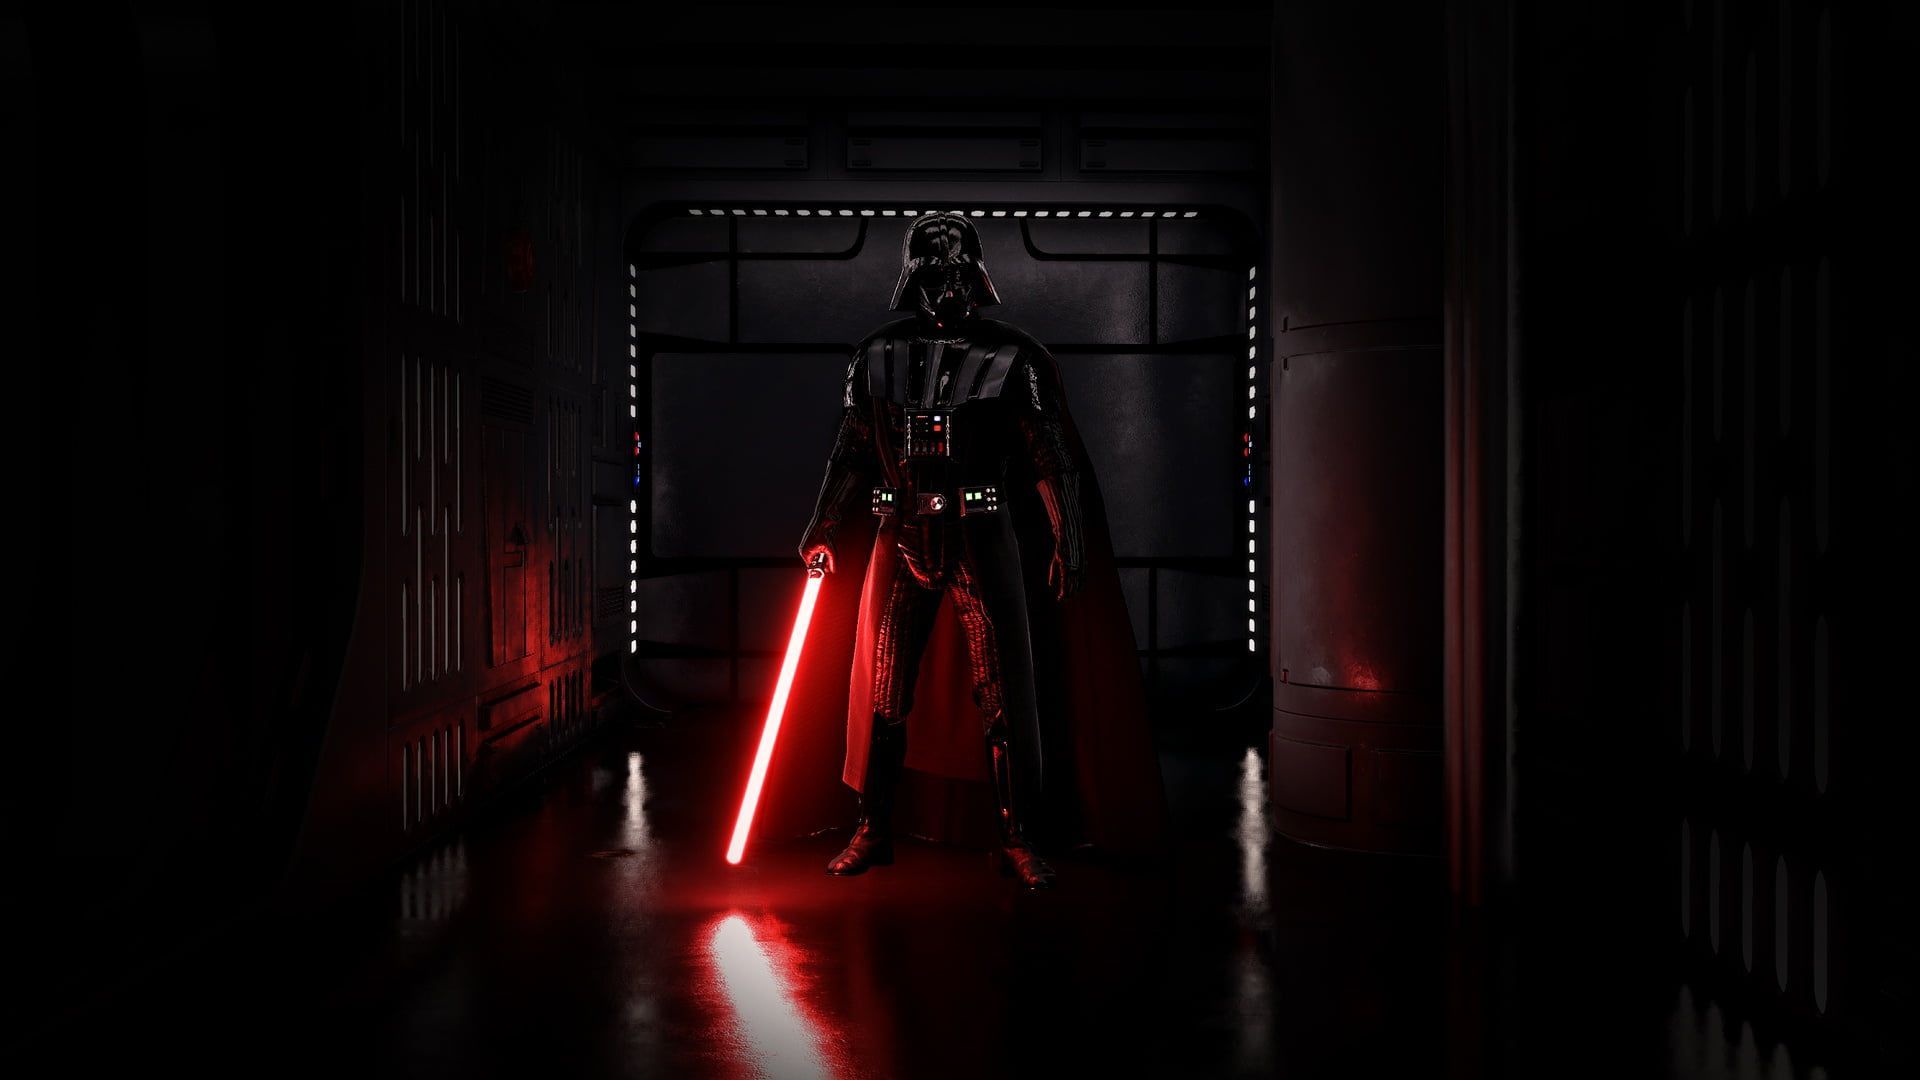 HD wallpaper: Star Wars Darth Vader digital wallpaper, Sith, dark, lightsaber